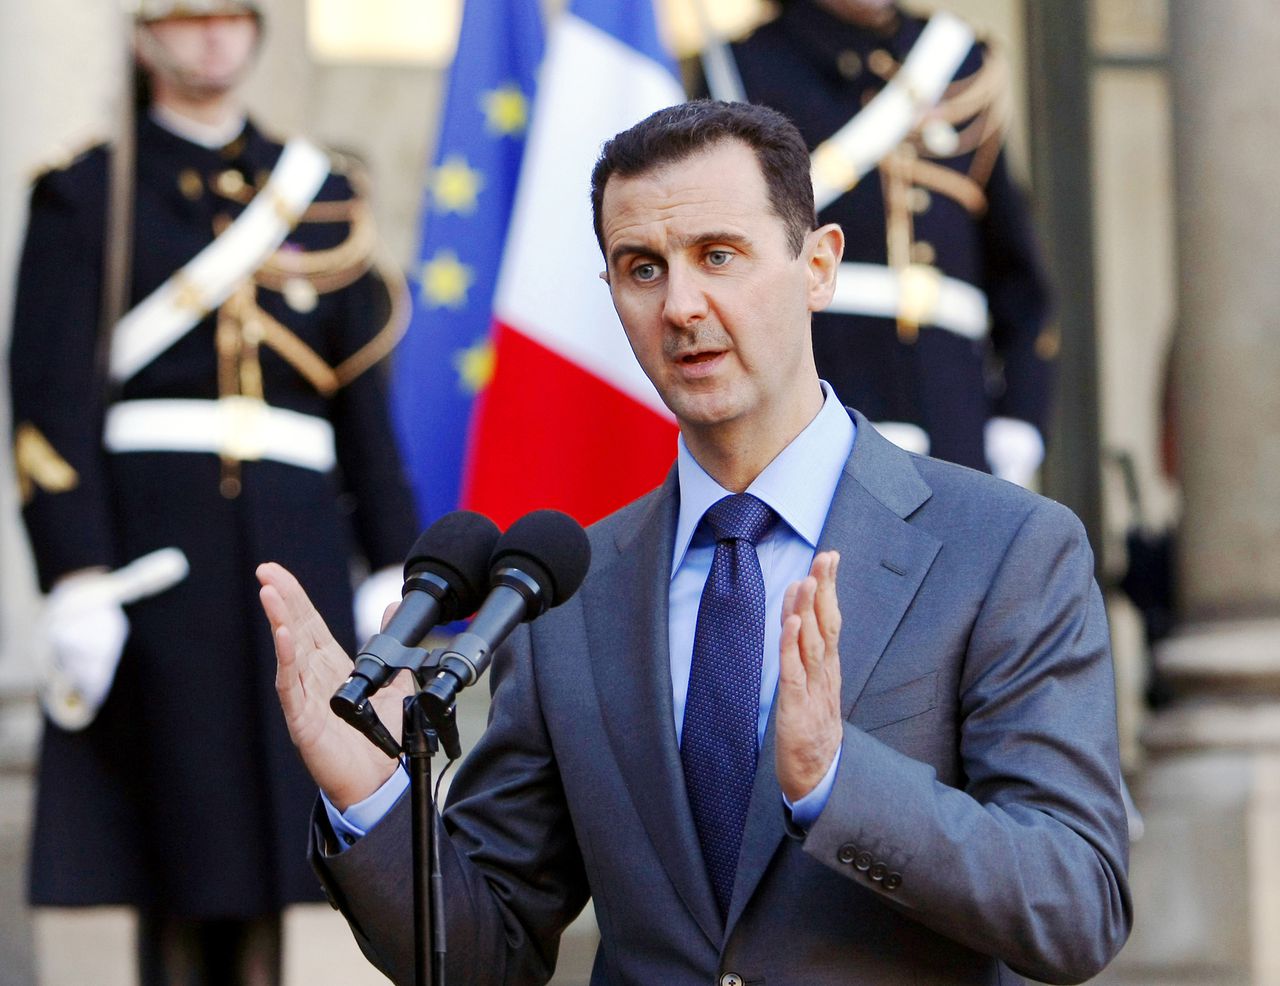 Assad op archiefbeeld uit 2010, tijdens een staatsbezoek aan Frankrijk.